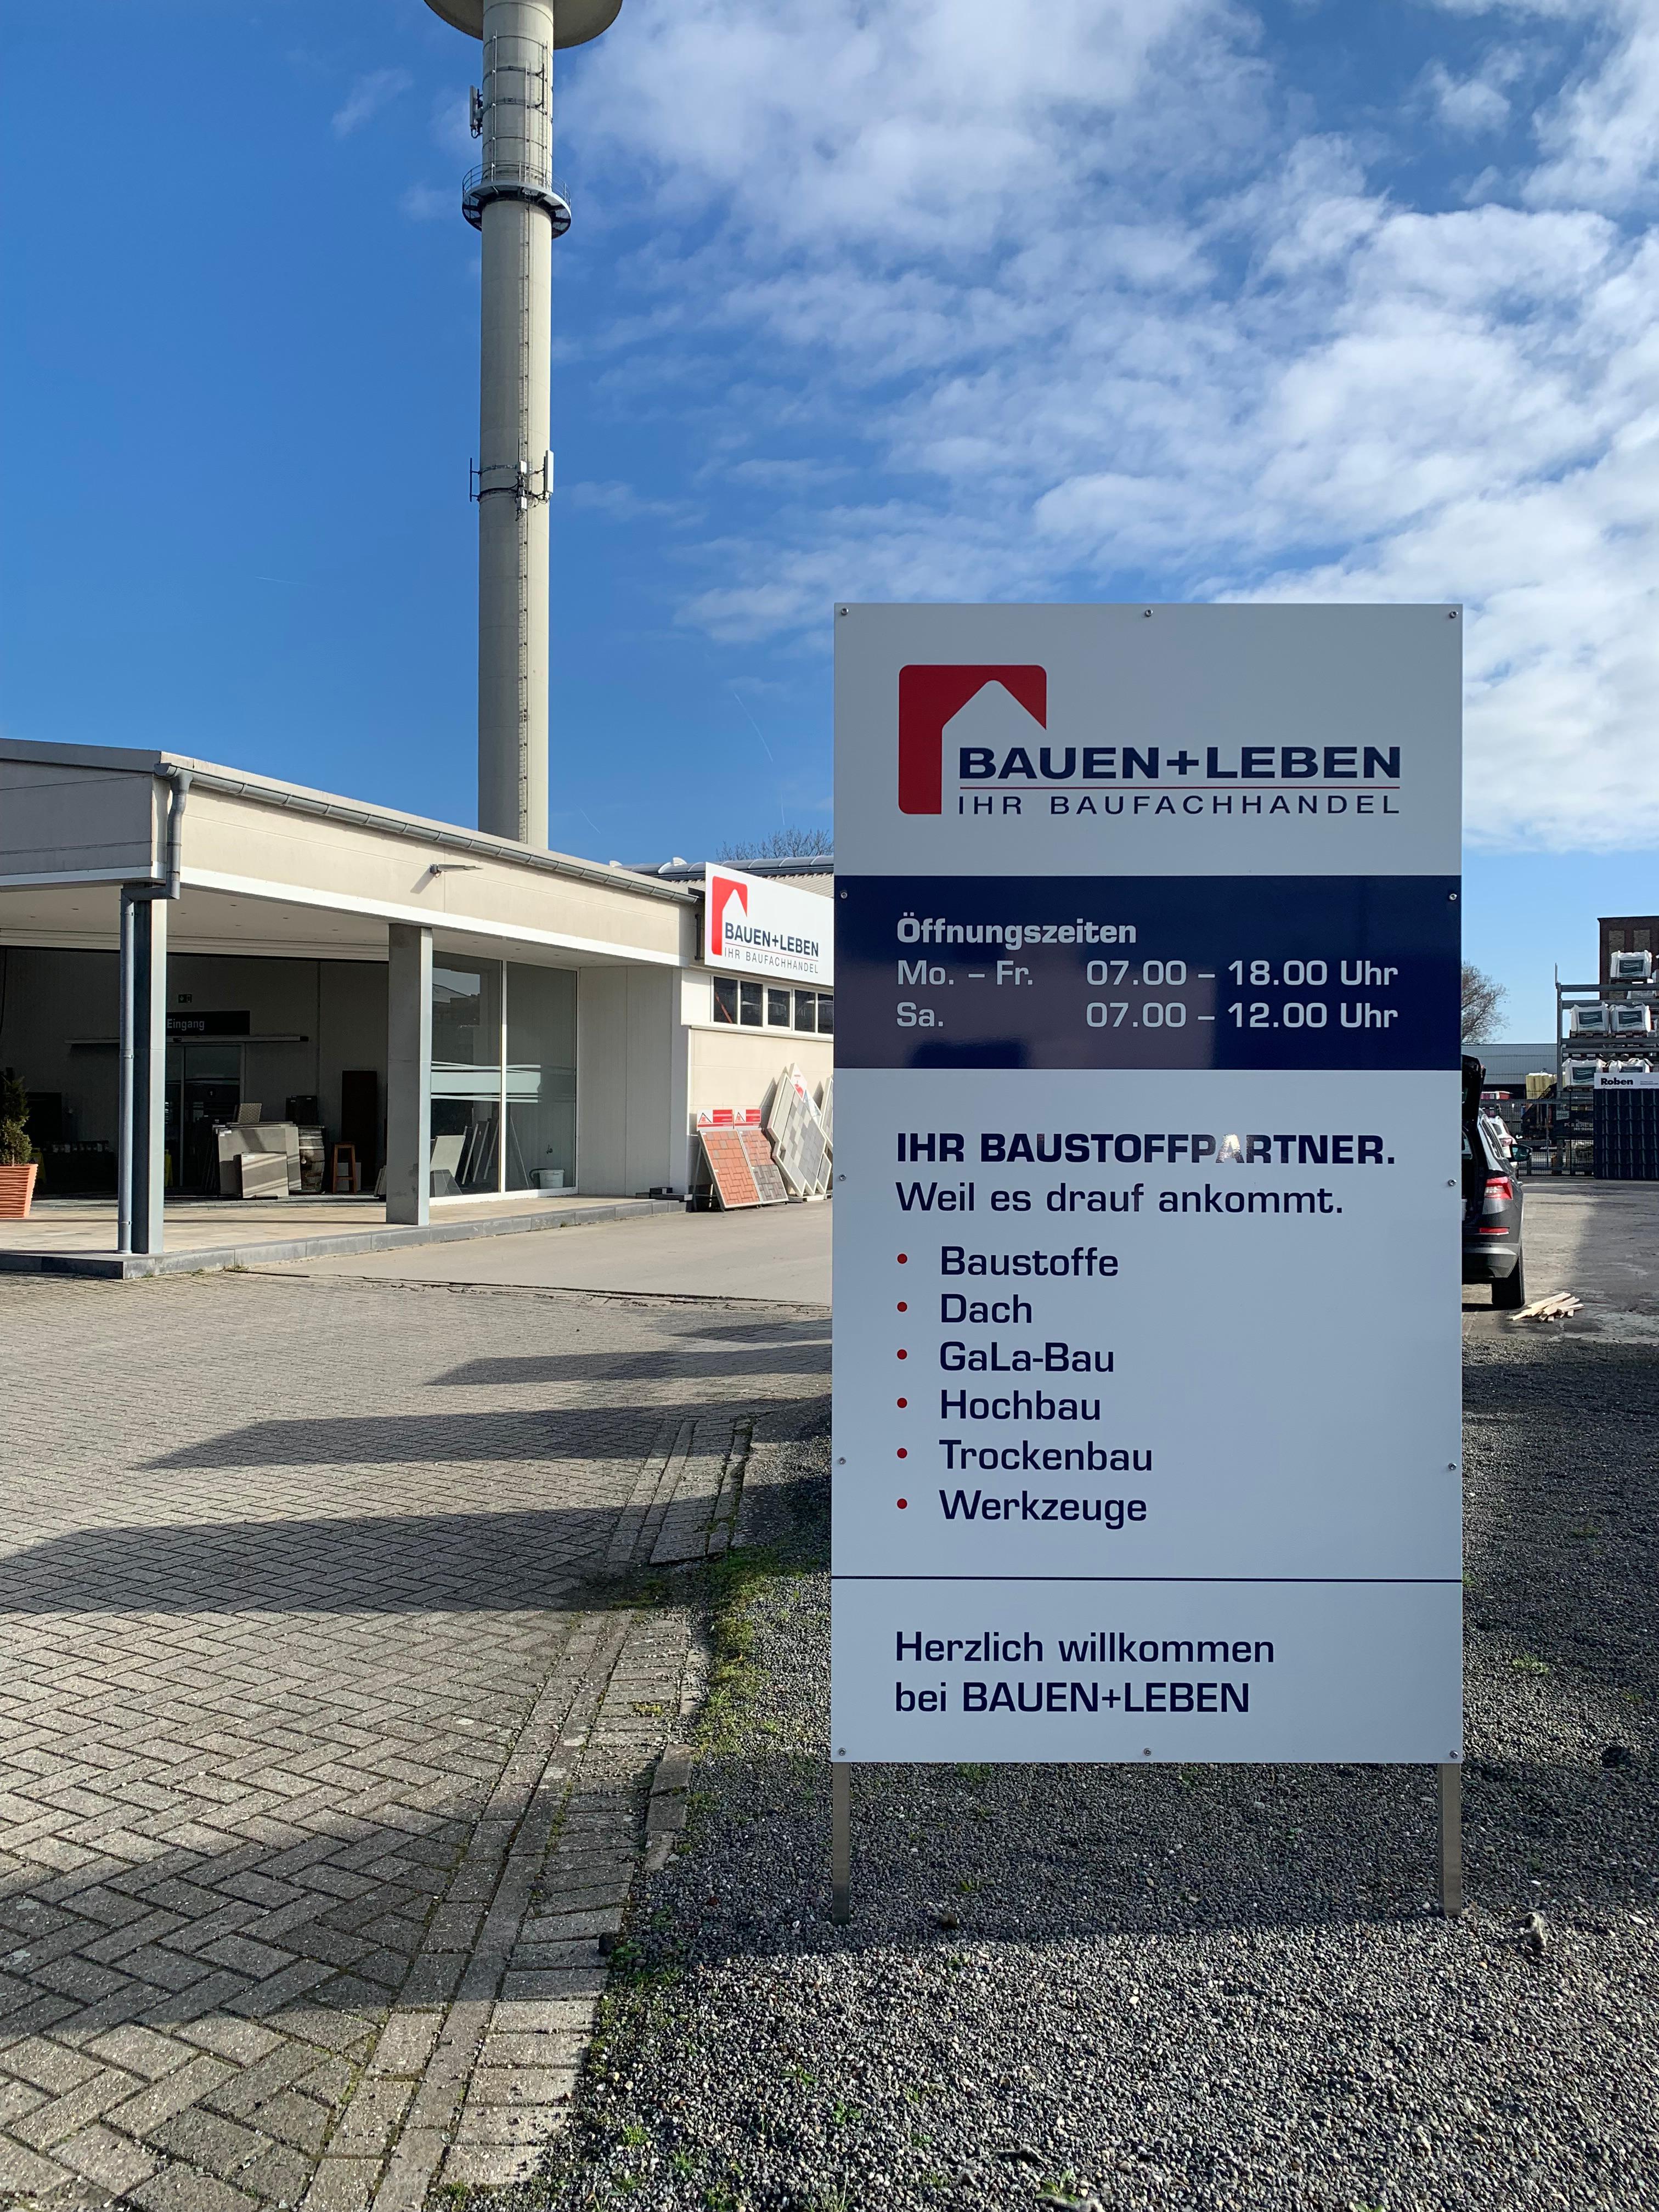 Bild 3 BAUEN+LEBEN - Ihr Baufachhandel | BAUEN+LEBEN team baucenter GmbH & Co. KG in Greven